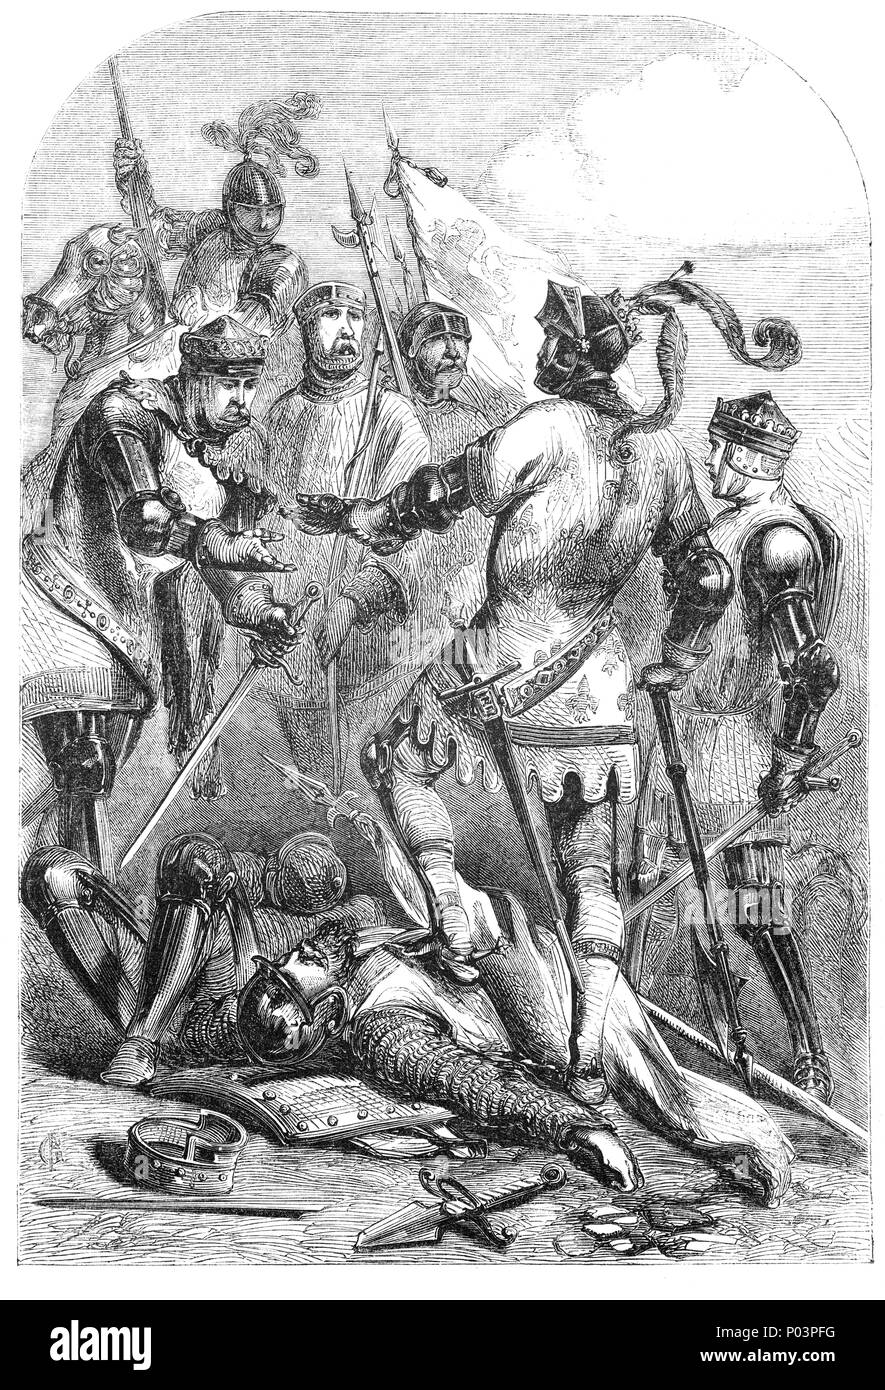 La Batalla de Poitiers se libró en 19 de septiembre de 1356 en Nouaillé, cerca de la ciudad de Poitiers, en Aquitania, en el oeste de Francia. Un ejército, muchos de ellos veteranos de Crécy, liderada por Eduardo, el Príncipe Negro, derrotó a un gran ejército aliado francés y dirigida por el rey Juan II de Francia, que conduzca a la captura del rey, su hijo, y gran parte de la nobleza francesa. Fue la segunda gran victoria de Inglés el Edwardian fase de la guerra de los Cien Años. Poitiers fue luchado diez años después de la Batalla de Crécy (la primera gran victoria), y aproximadamente la mitad de un siglo antes de la tercera, la batalla de Azincourt (1415). Foto de stock